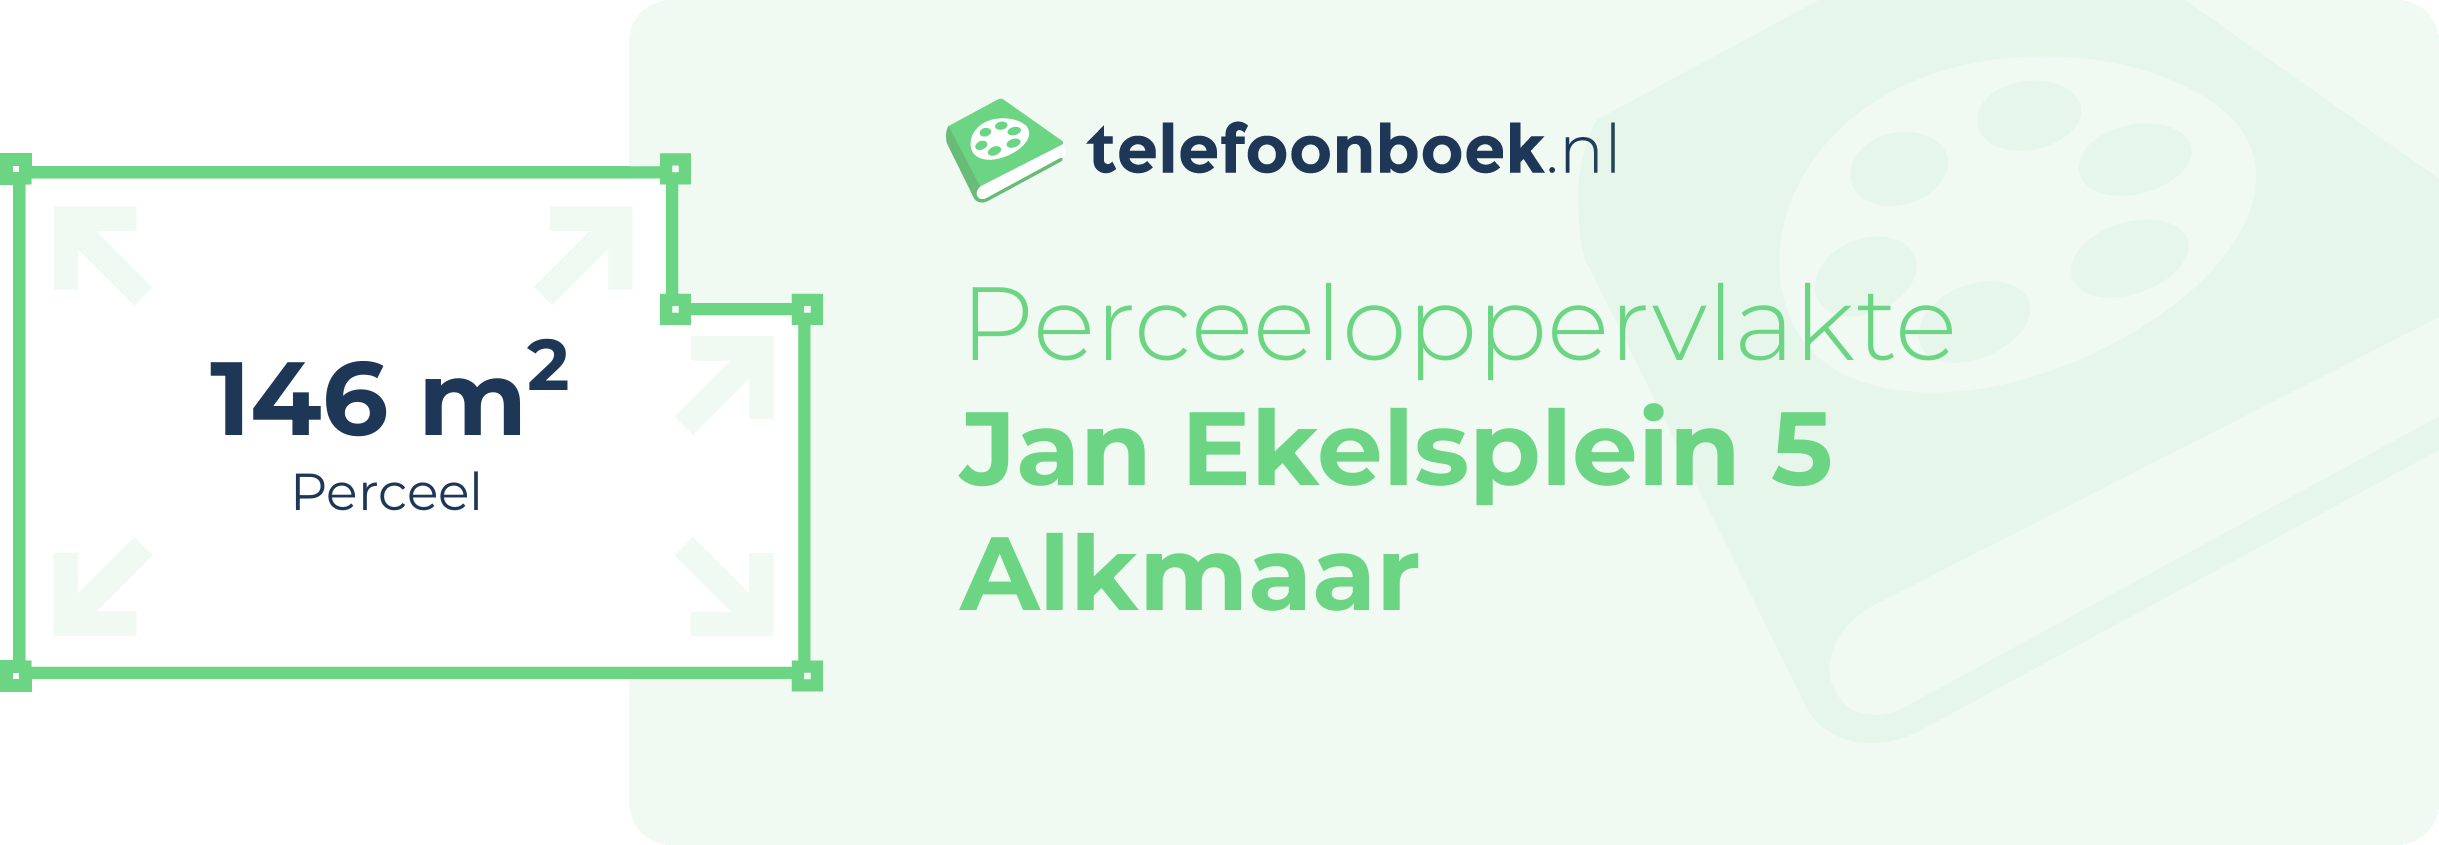 Perceeloppervlakte Jan Ekelsplein 5 Alkmaar